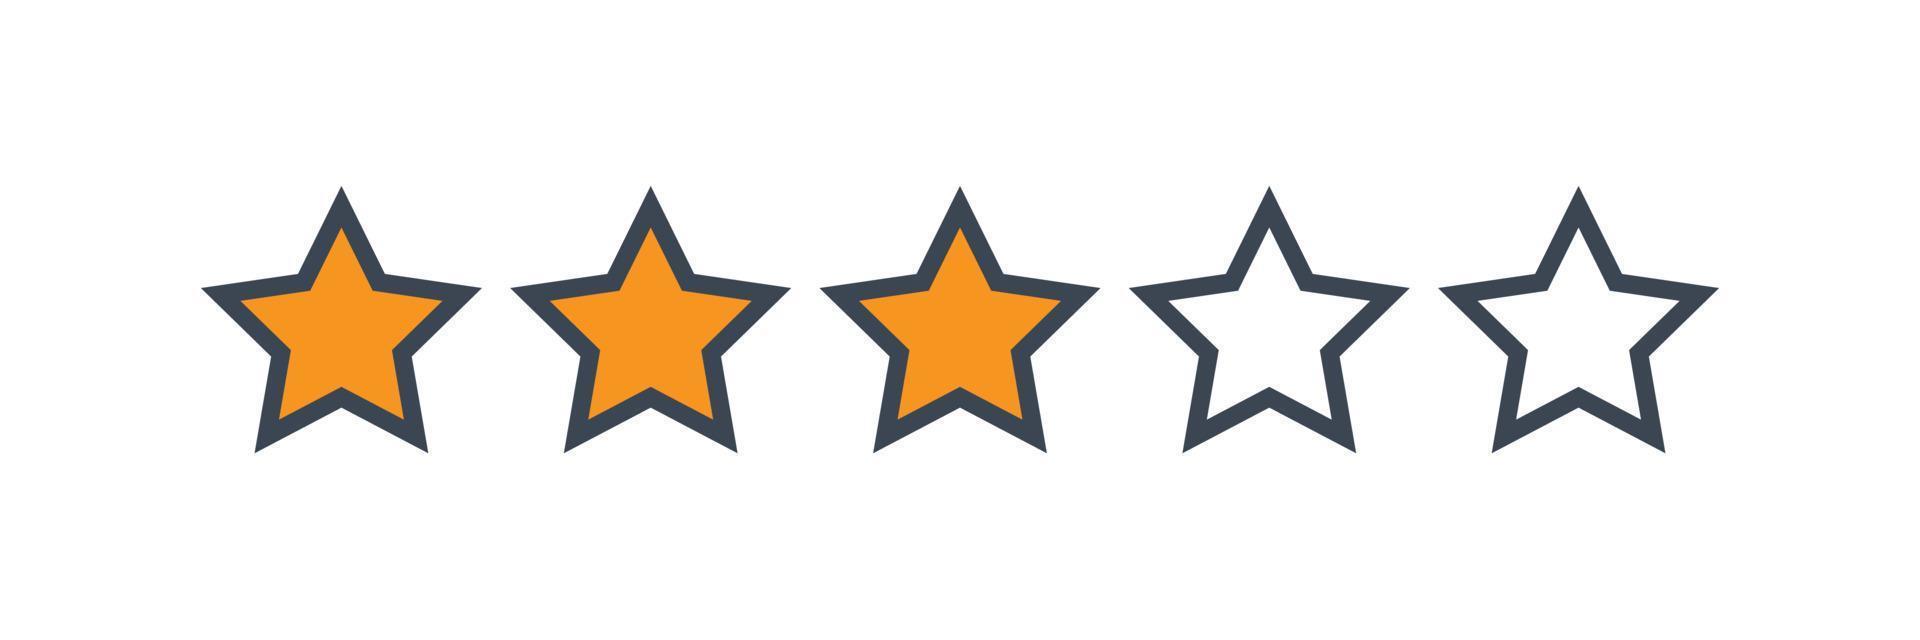 recensione di valutazione del prodotto del cliente a tre stelle vettore